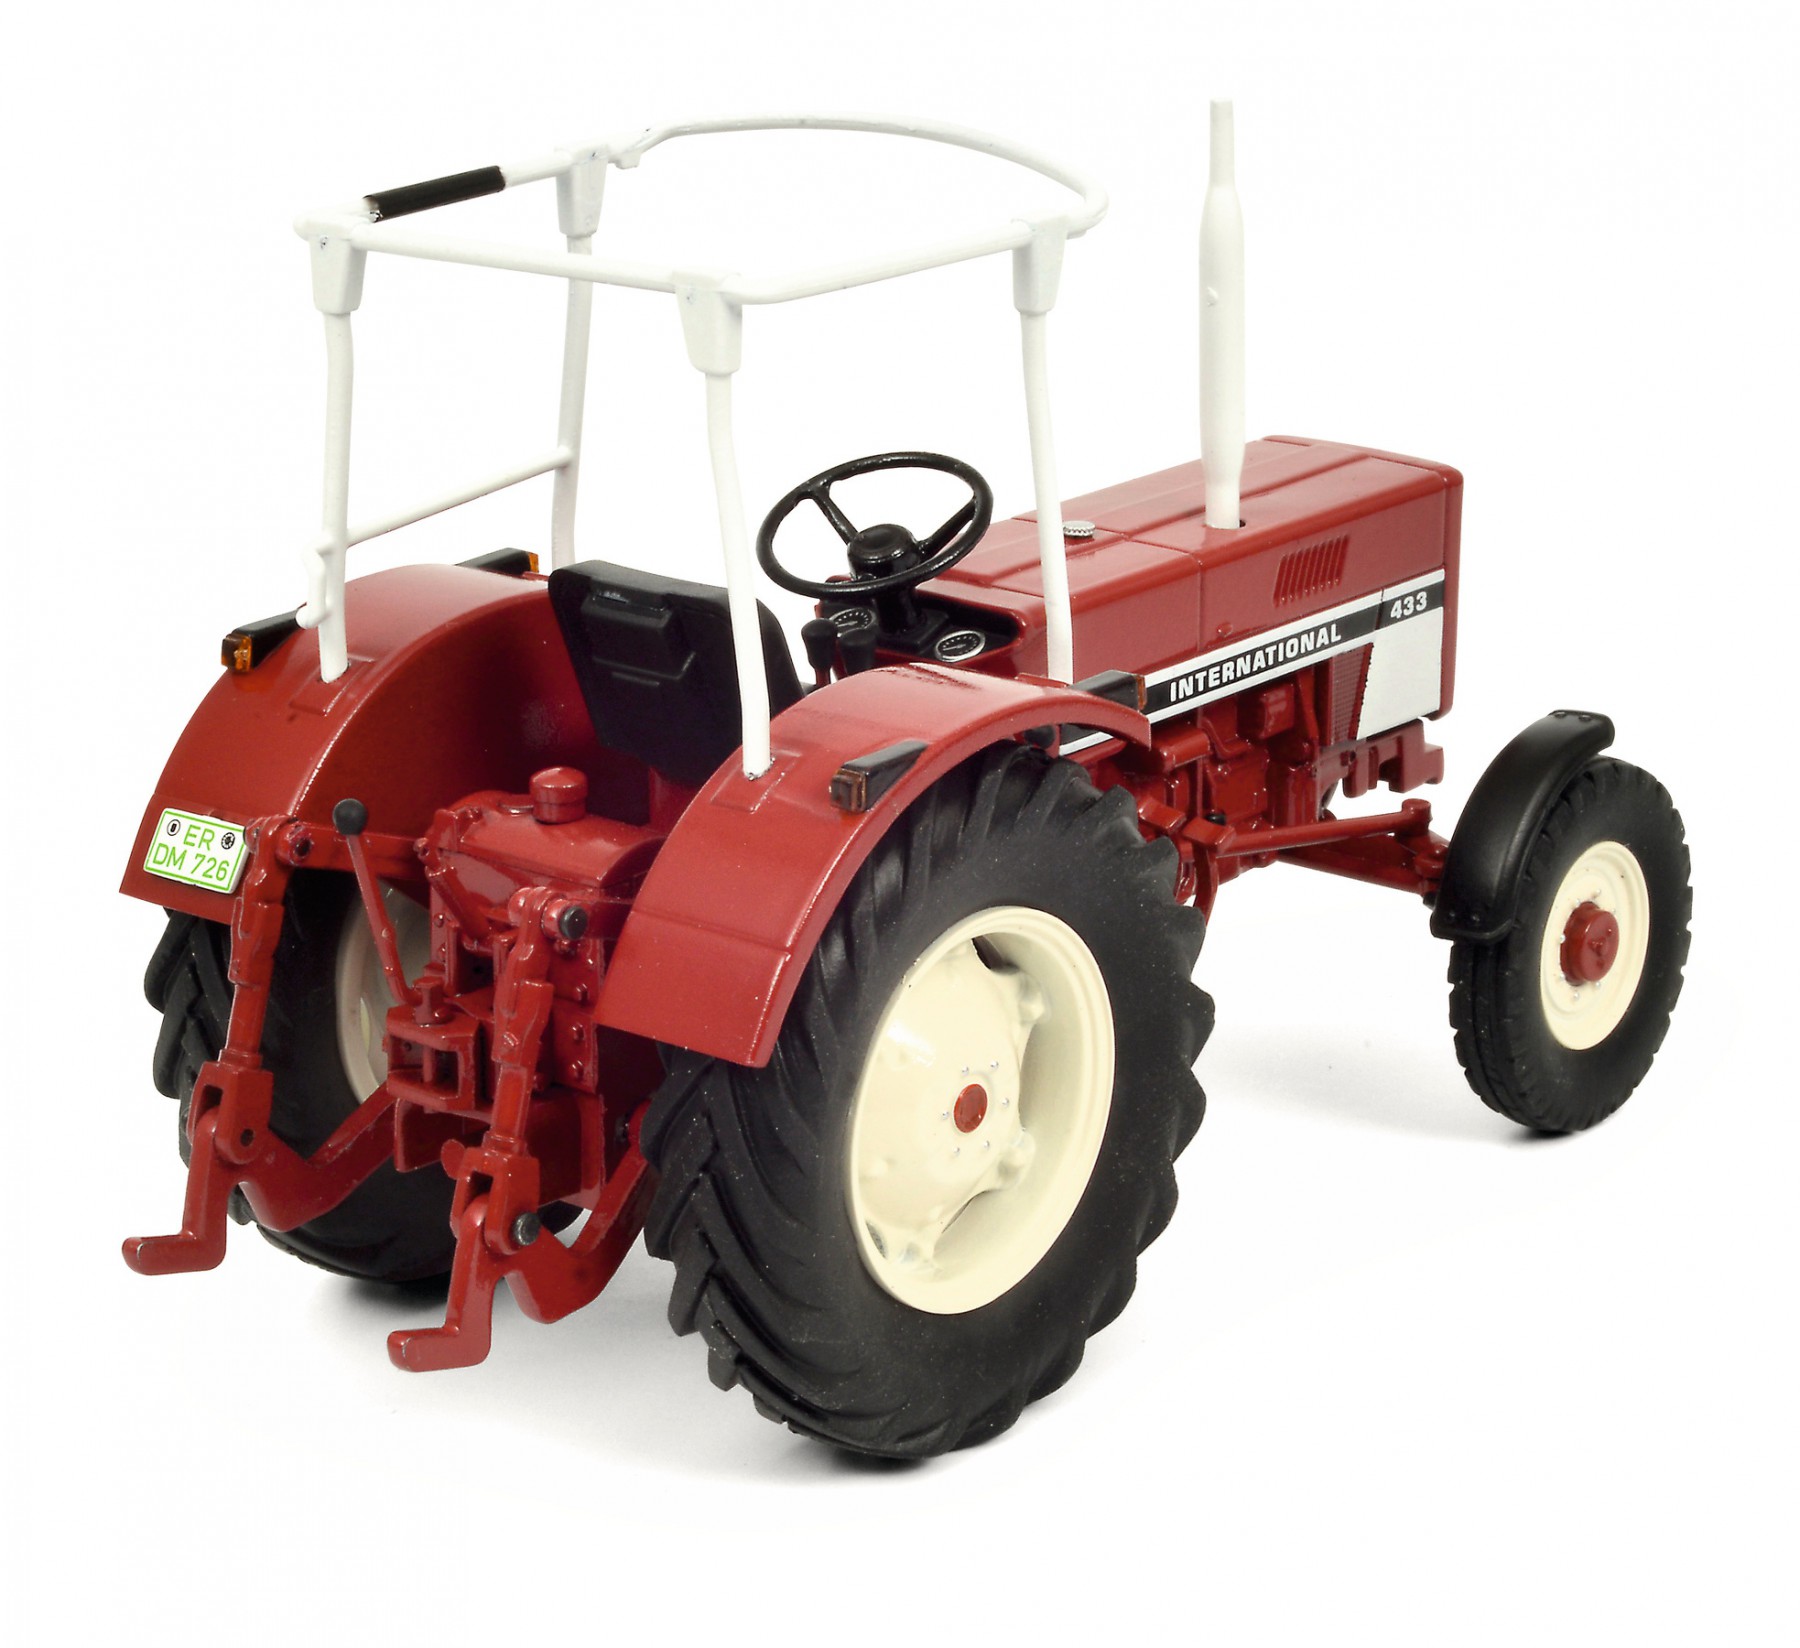 rot 1:32-450779300 Schuco Modell Traktor International 433